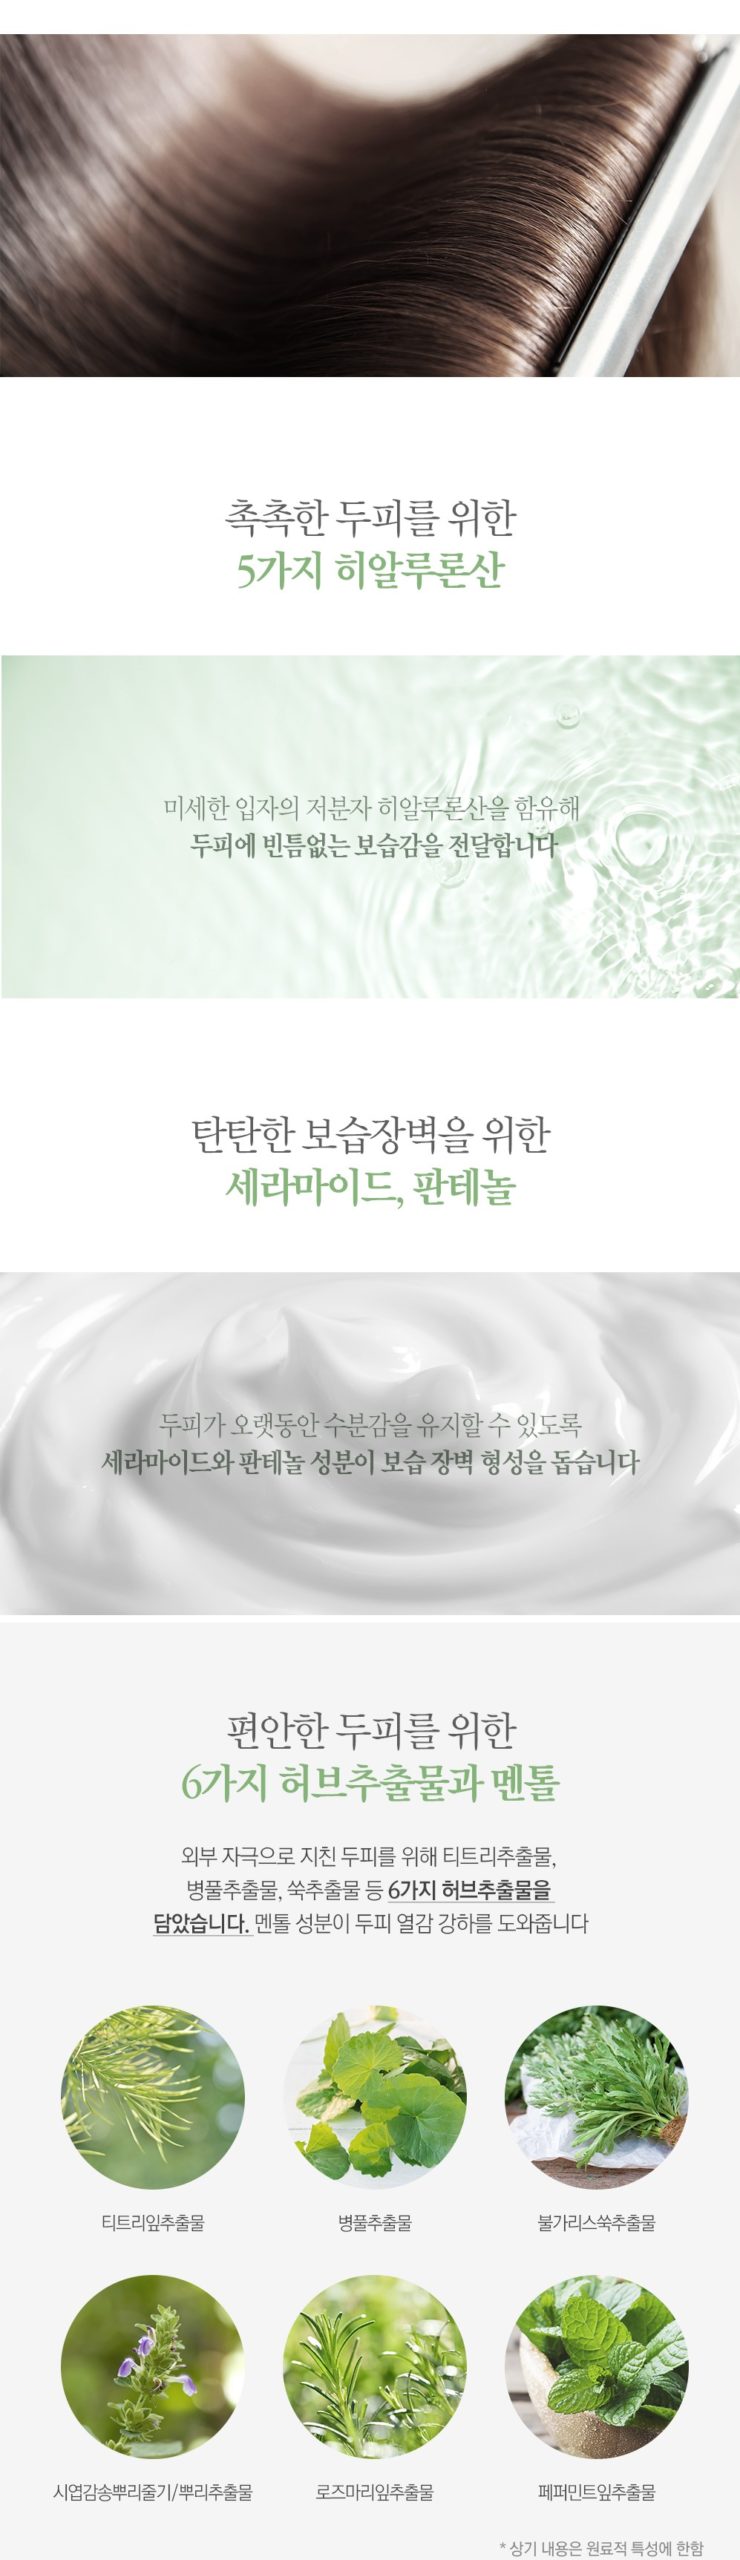 韓國食品-[나드] 센시티브 두피 케어 트리트먼트 500ml